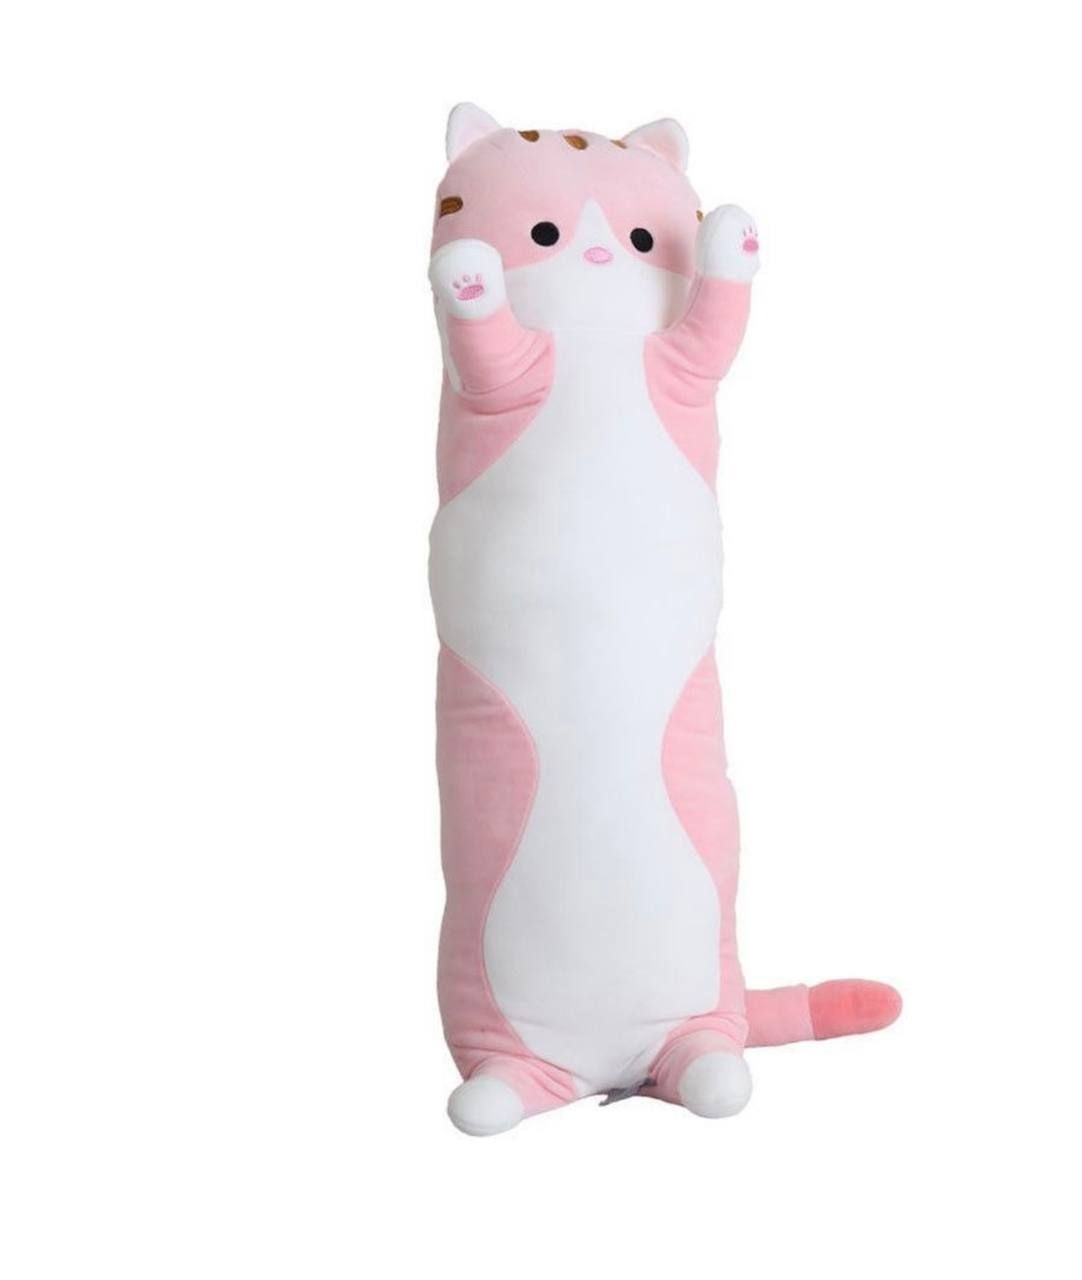 Сосиста. Кот батон мягкая игрушка 110 см. Длинная подушка обнимашка кот 110 см. Подушка обнимашка кот батон. Кот батон 110 см розовый.